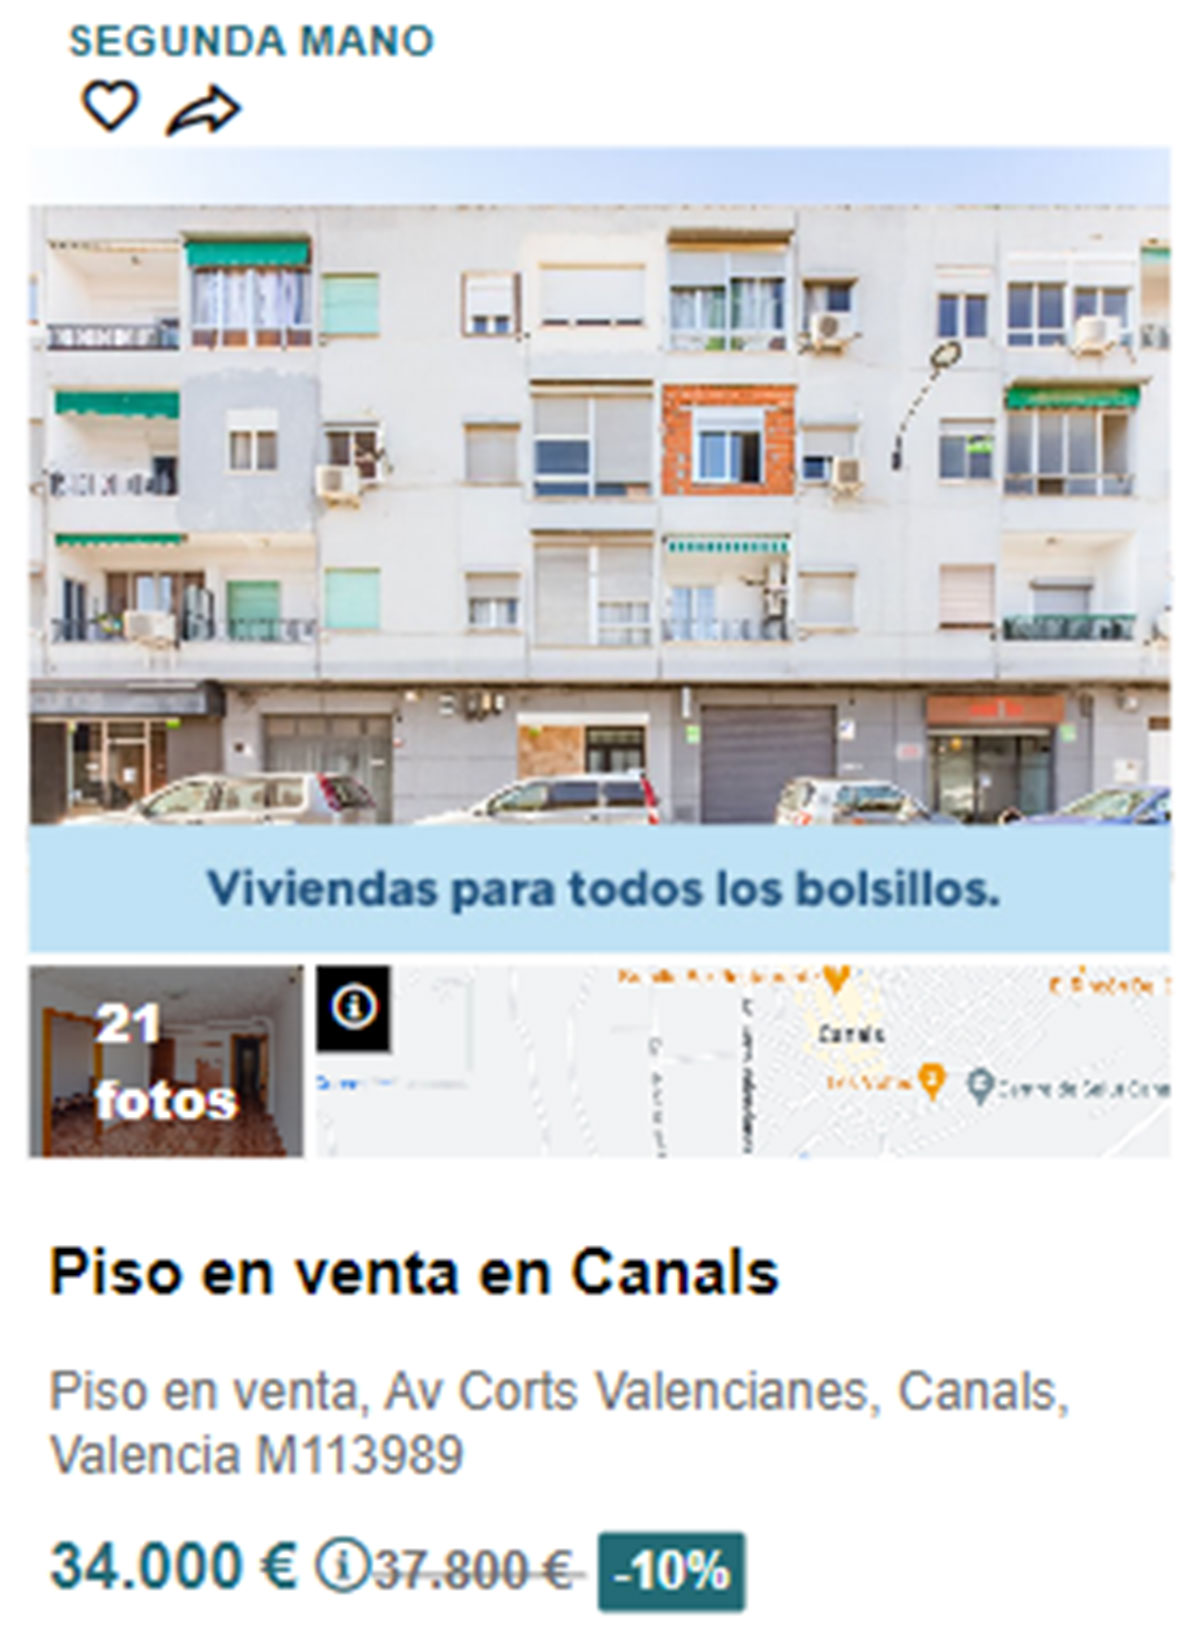 Piso en pueblos de Valencia por 34.000 euros